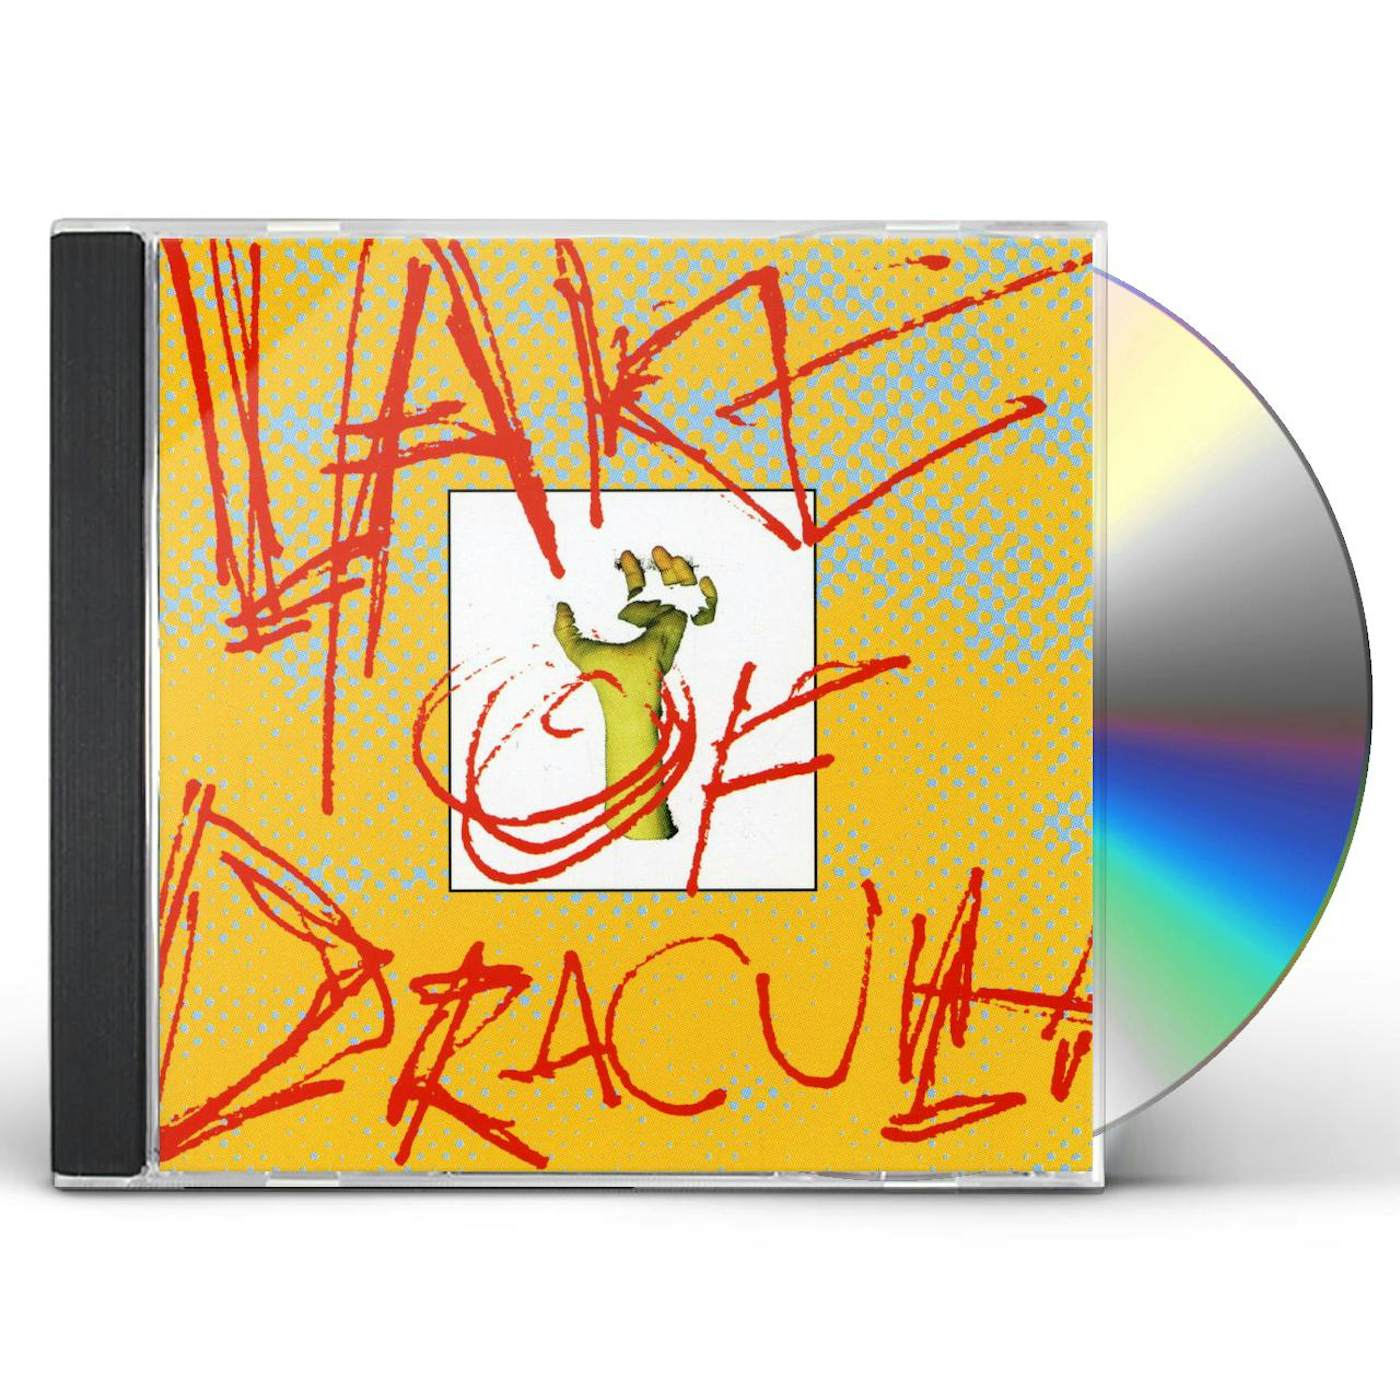 LAKE OF DRACULA CD